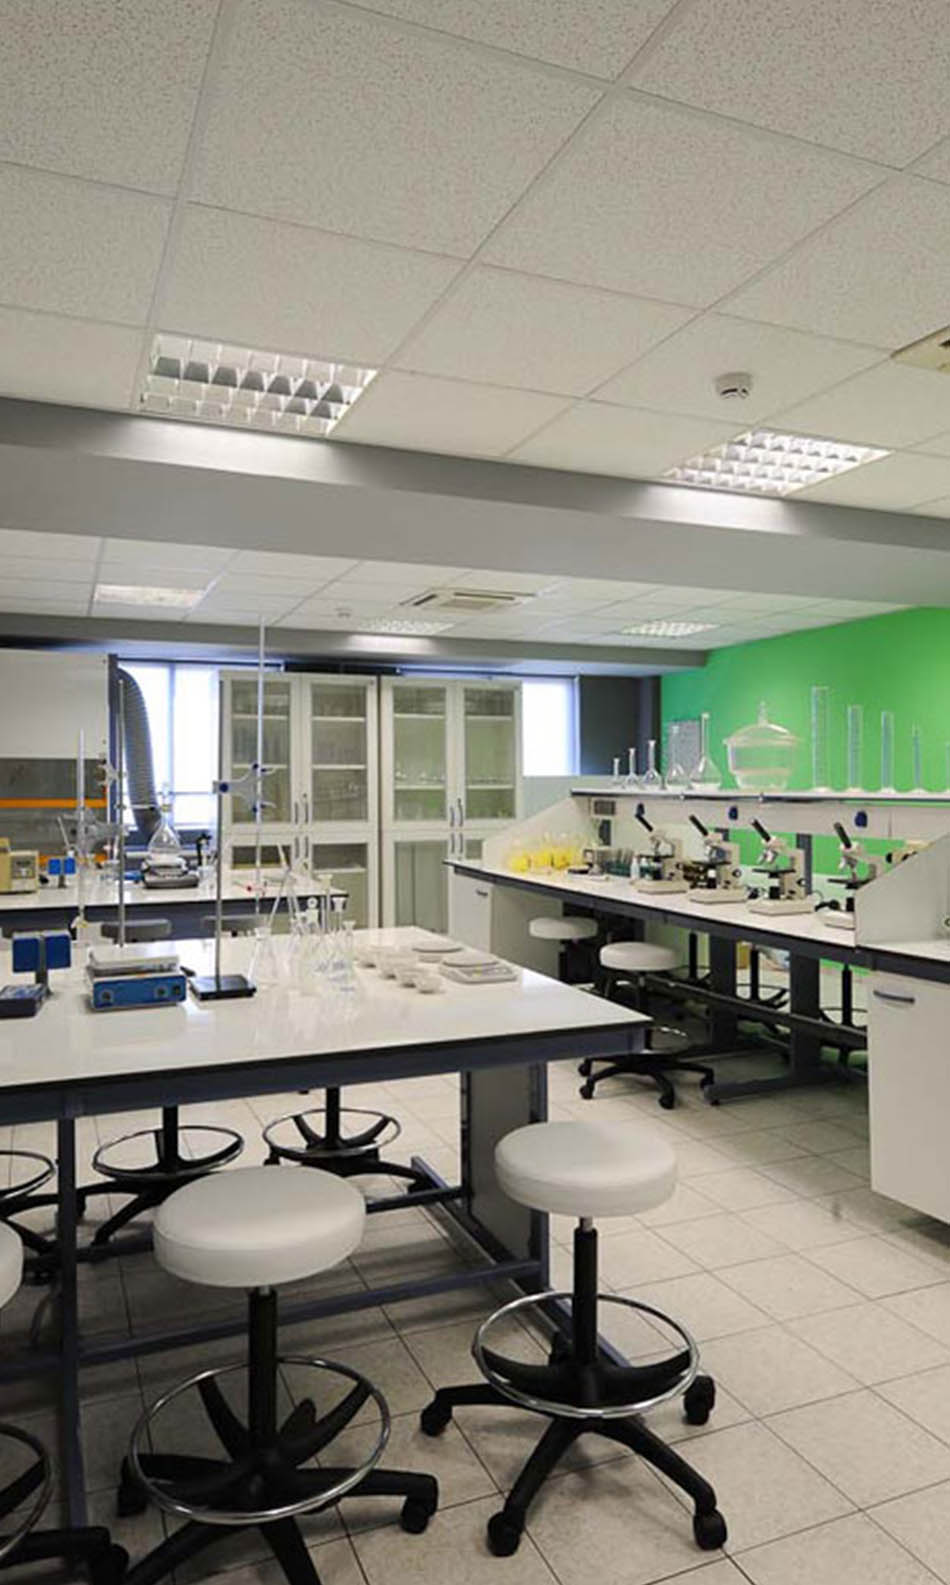 ΙΕΚ ΑΚΜΗ: Εργαστήριο Σχολής Μικροβιολογίας